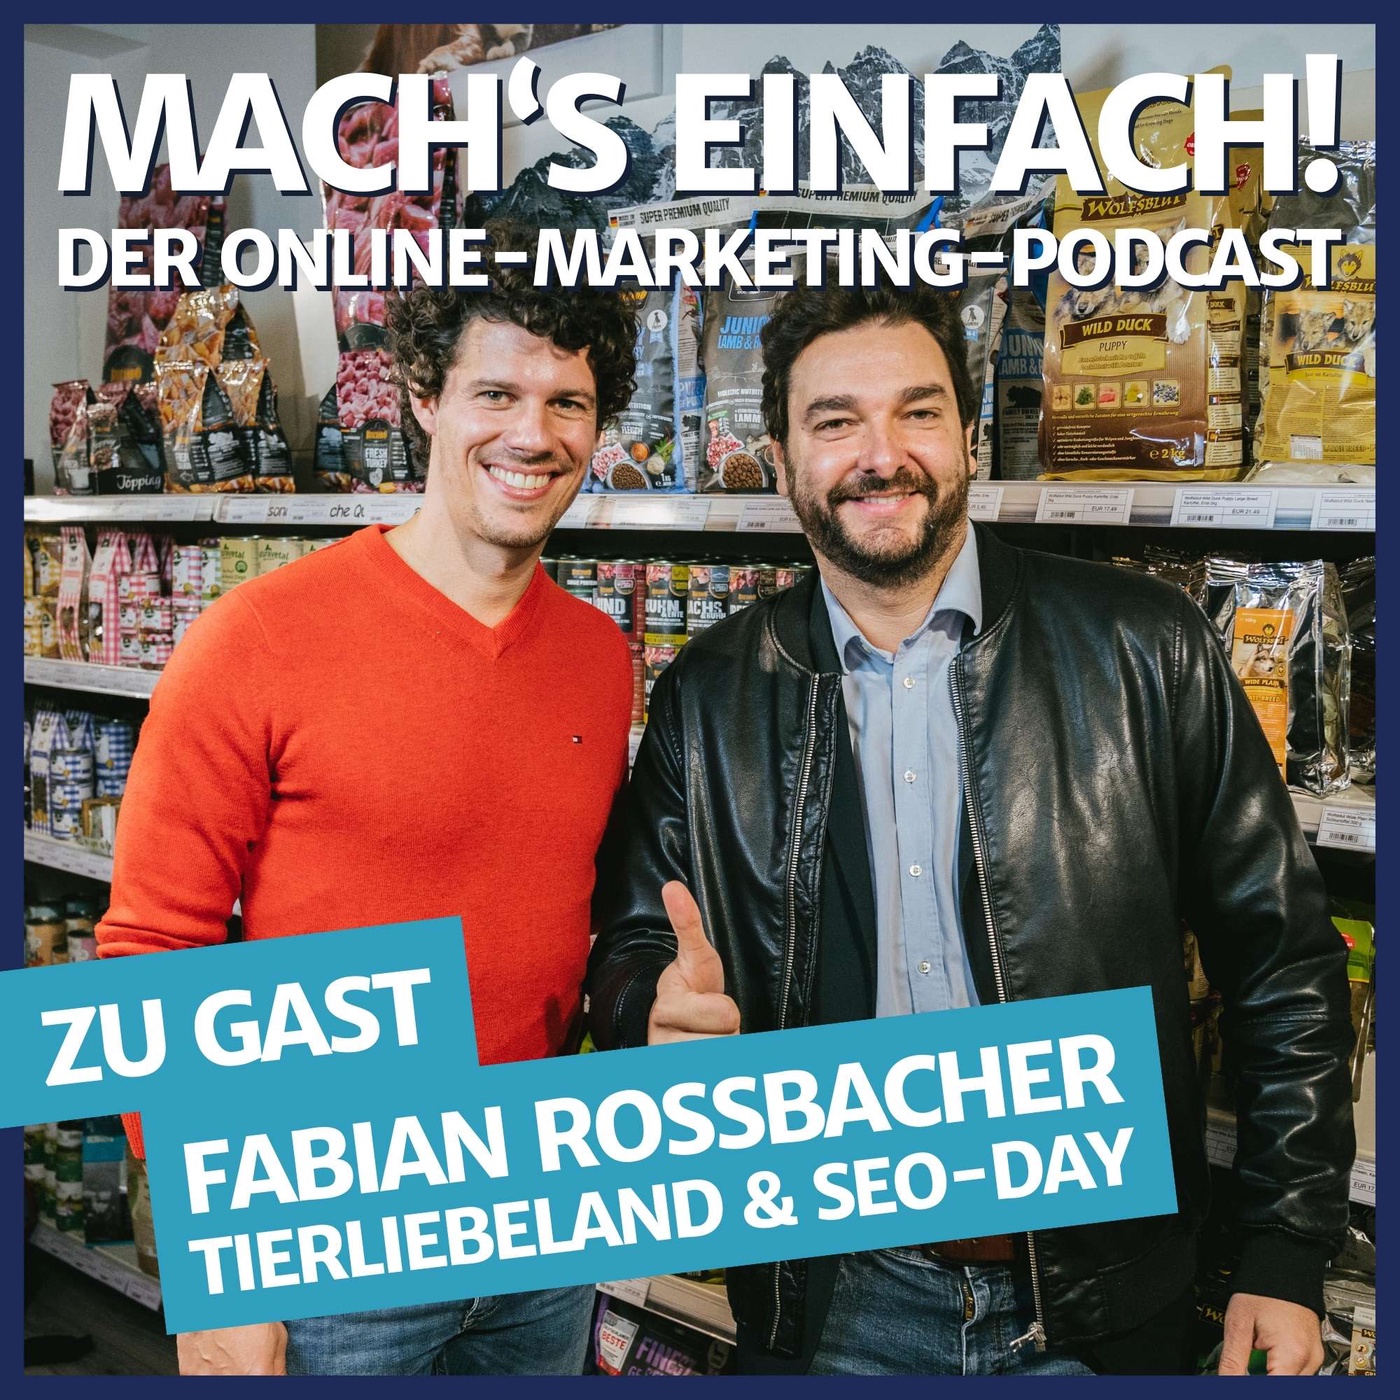 #3 mit Fabian Rossbacher von tierliebeland.de und seo-day.de